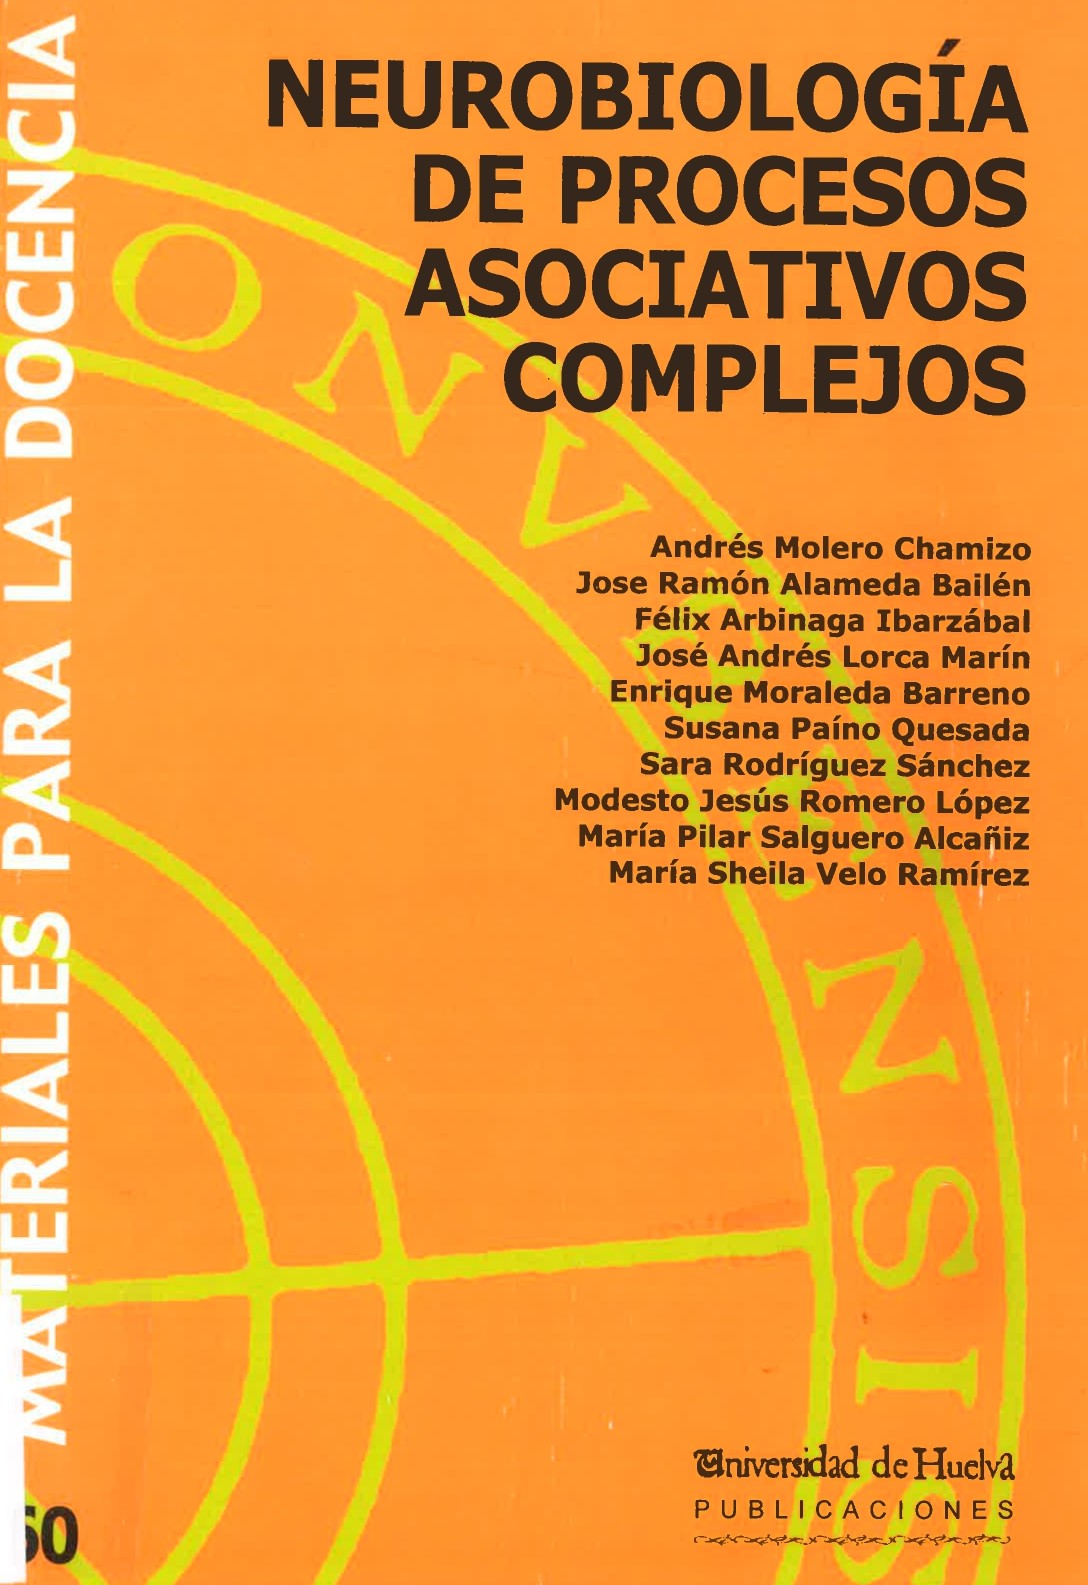 Imagen de portada del libro Neurobiología de Procesos Asociativos Complejos.